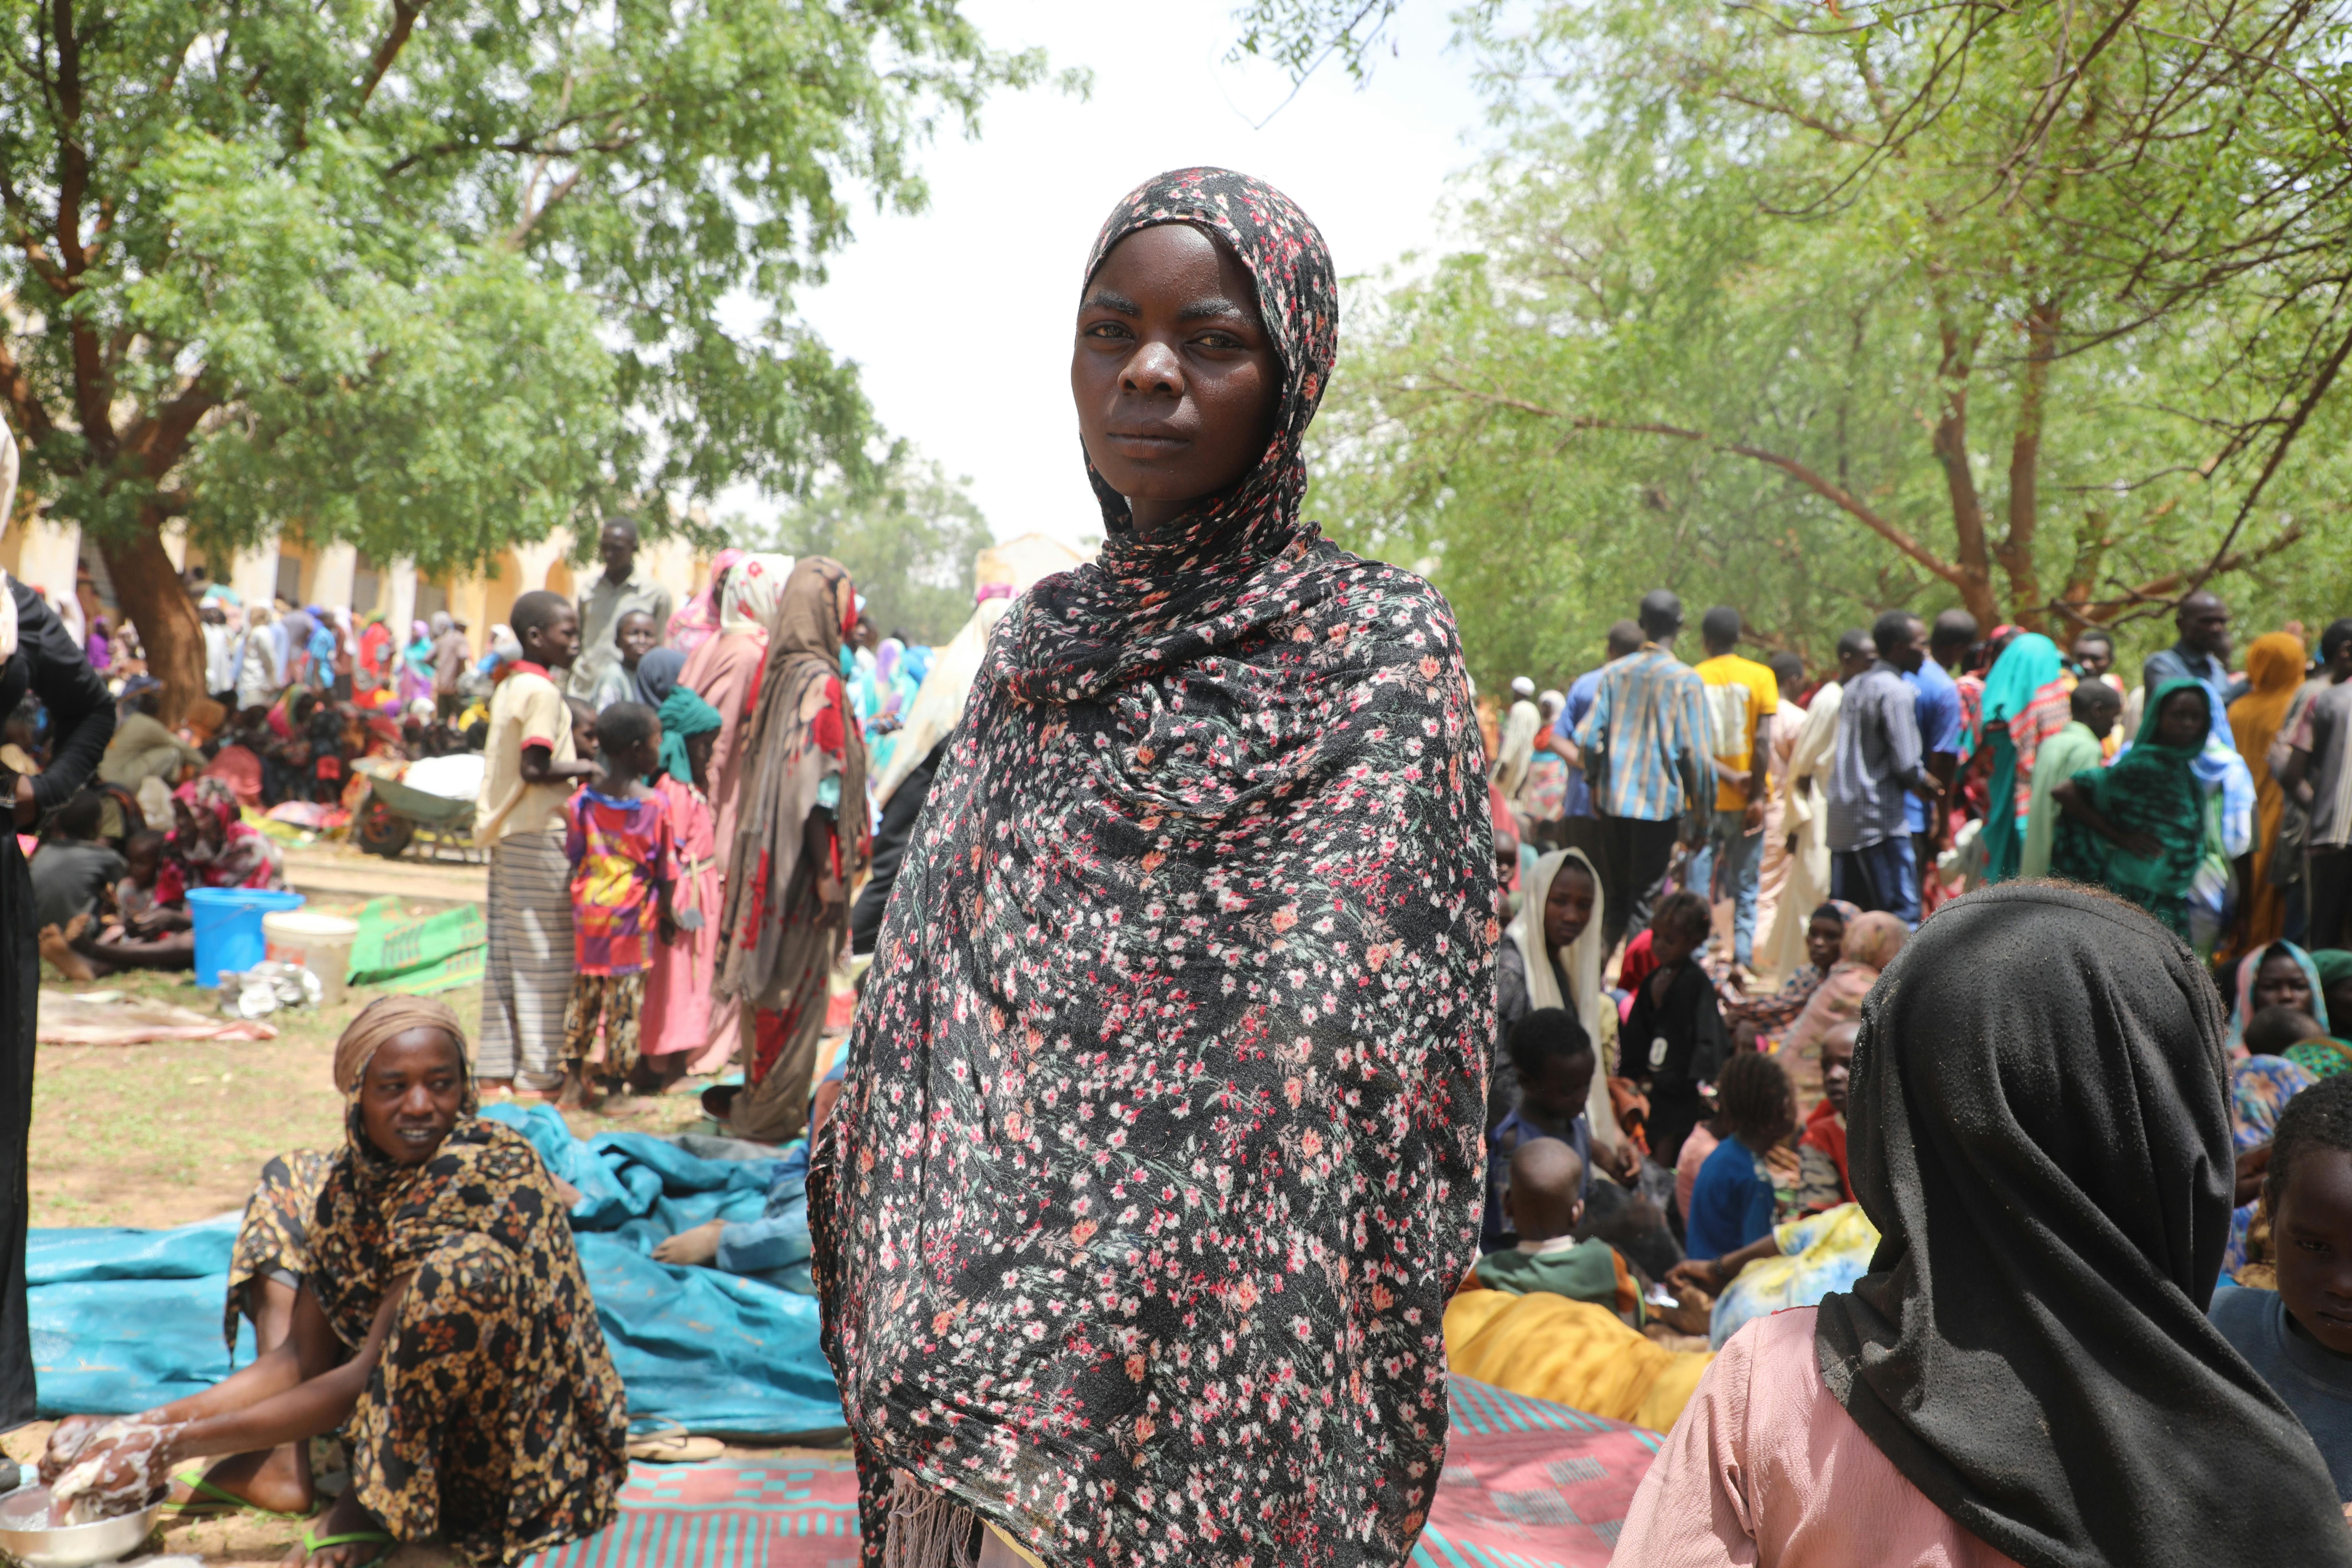 Makhboula, 15 anni, è scappata dal El Geneina in Sudan e ha trovato rifugia ad Adre. “La nostra casa è stata attaccata di prima mattina. Non sono riuscita a trovare i miei genitori. Sono scappata via, con i piedi che mi facevano male. Spero solo di ritrovarli. Qualcuno mi ha dato cibo per strada”.